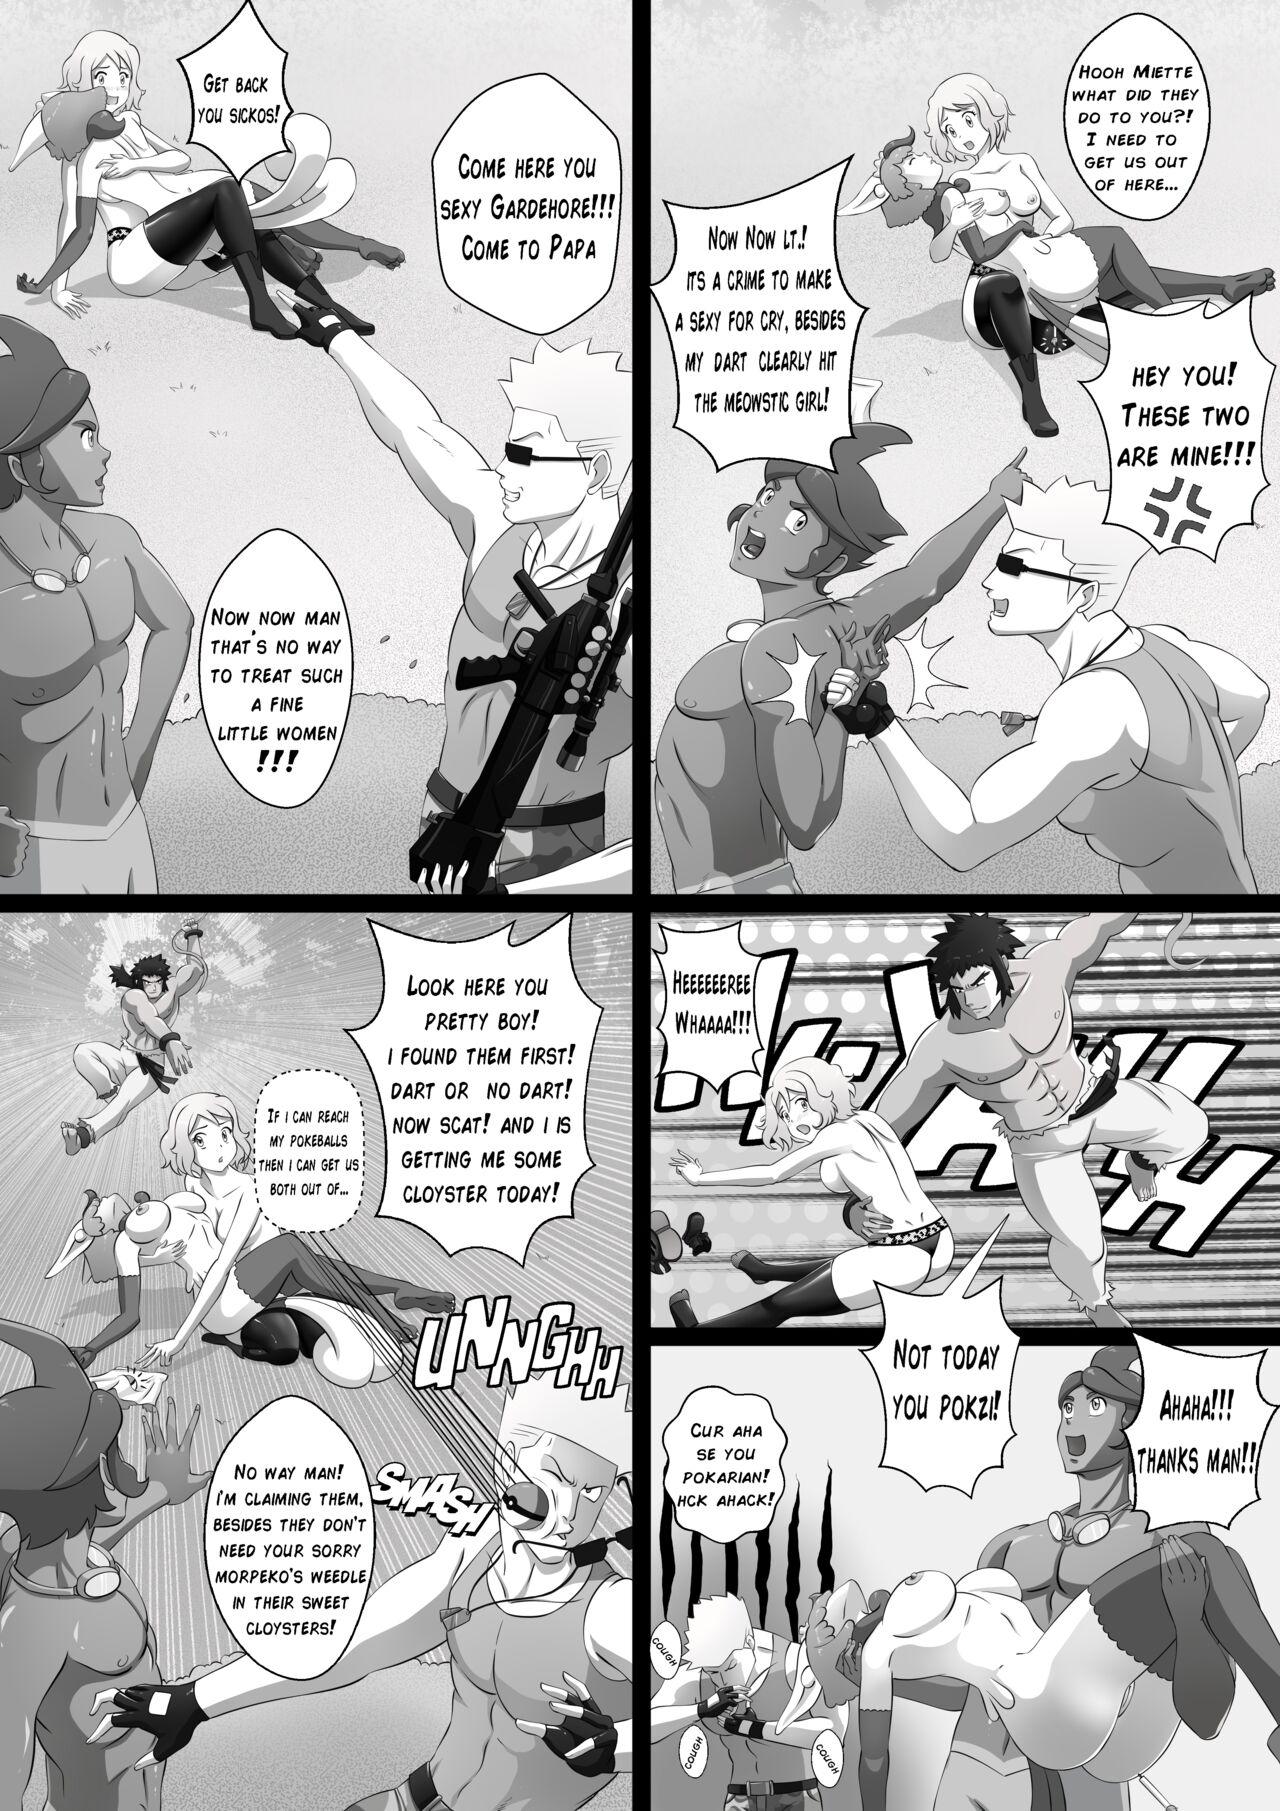 Toes Pokemon: Into the Safari Zone! A wild hunt for Serena. [GHTA] [ Nasbak] Pg 1-4 - Pokemon | pocket monsters Nasty - Page 3